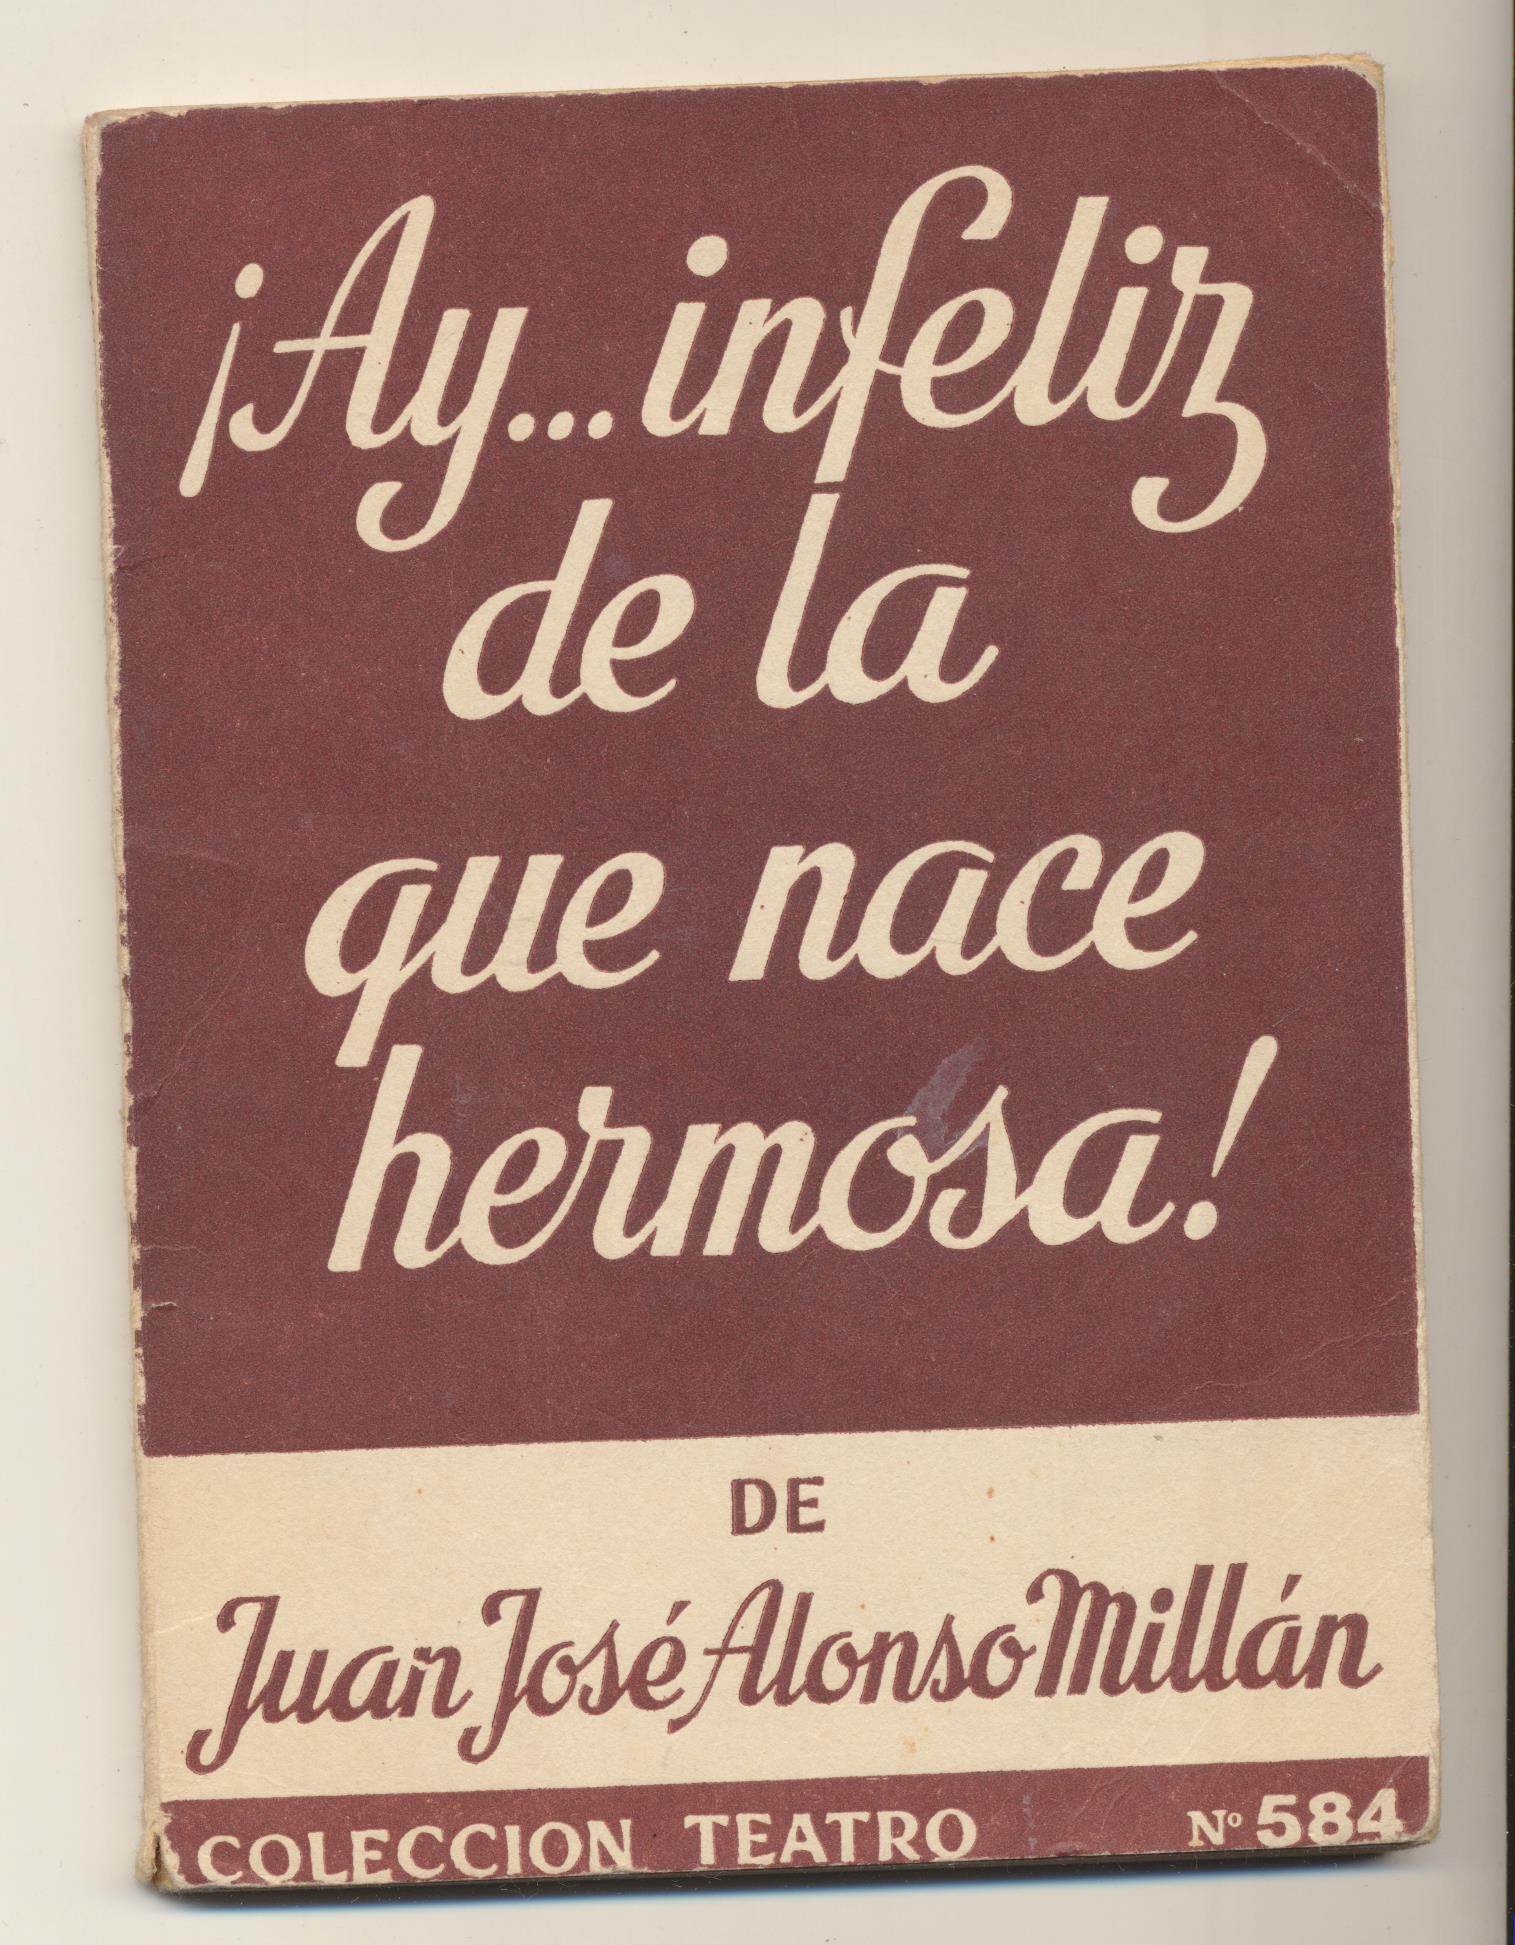 Colección Teatro nº 584. J.J. Alonso Millán. ¡Ay… infeliz de la que nace hermosa! Escelicer 1968